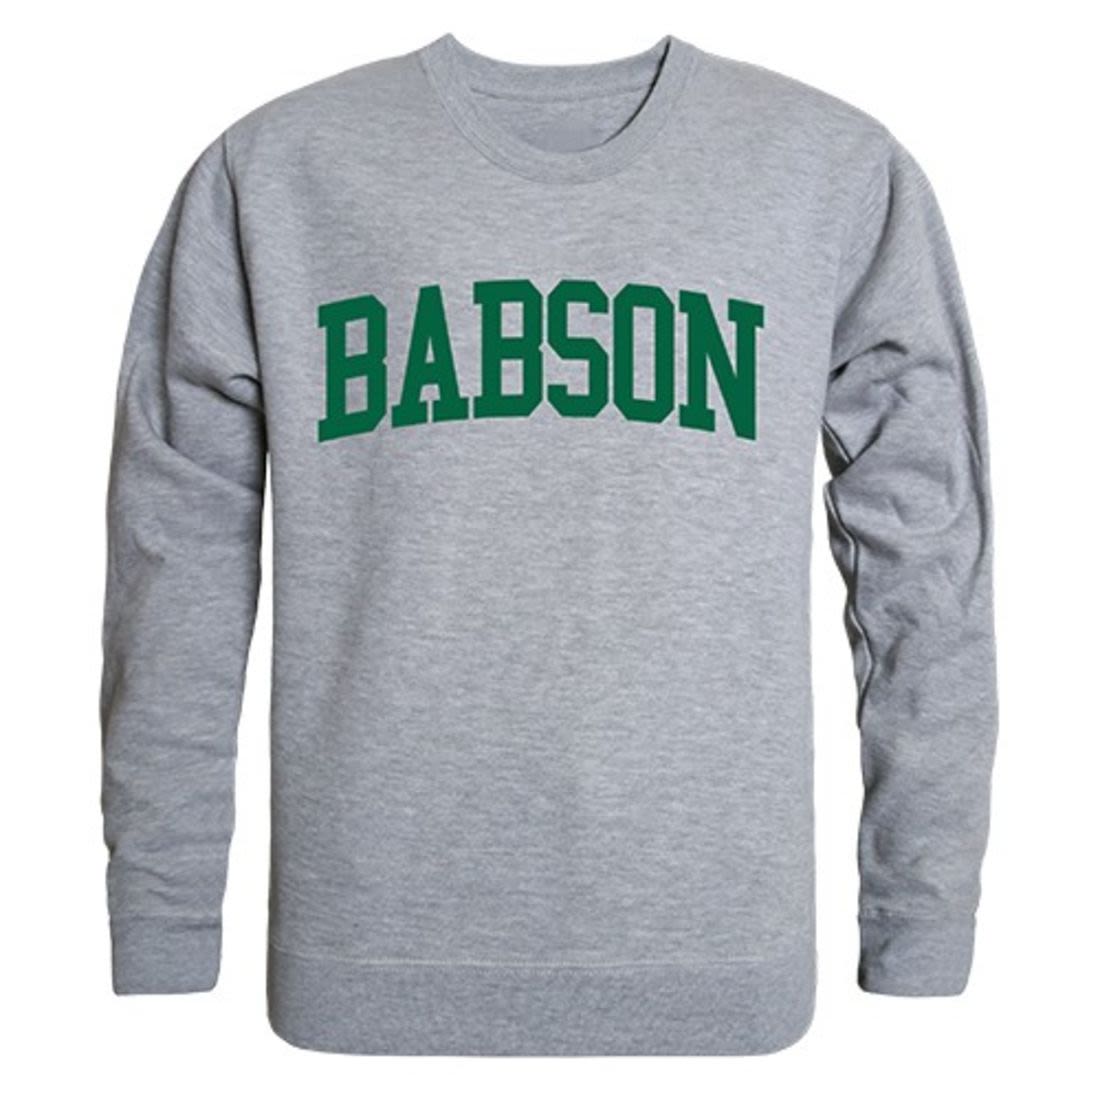 Babson College Game Day Crewneck Pullover Sweatshirt Sweater Heather Grey-Campus-Wardrobe